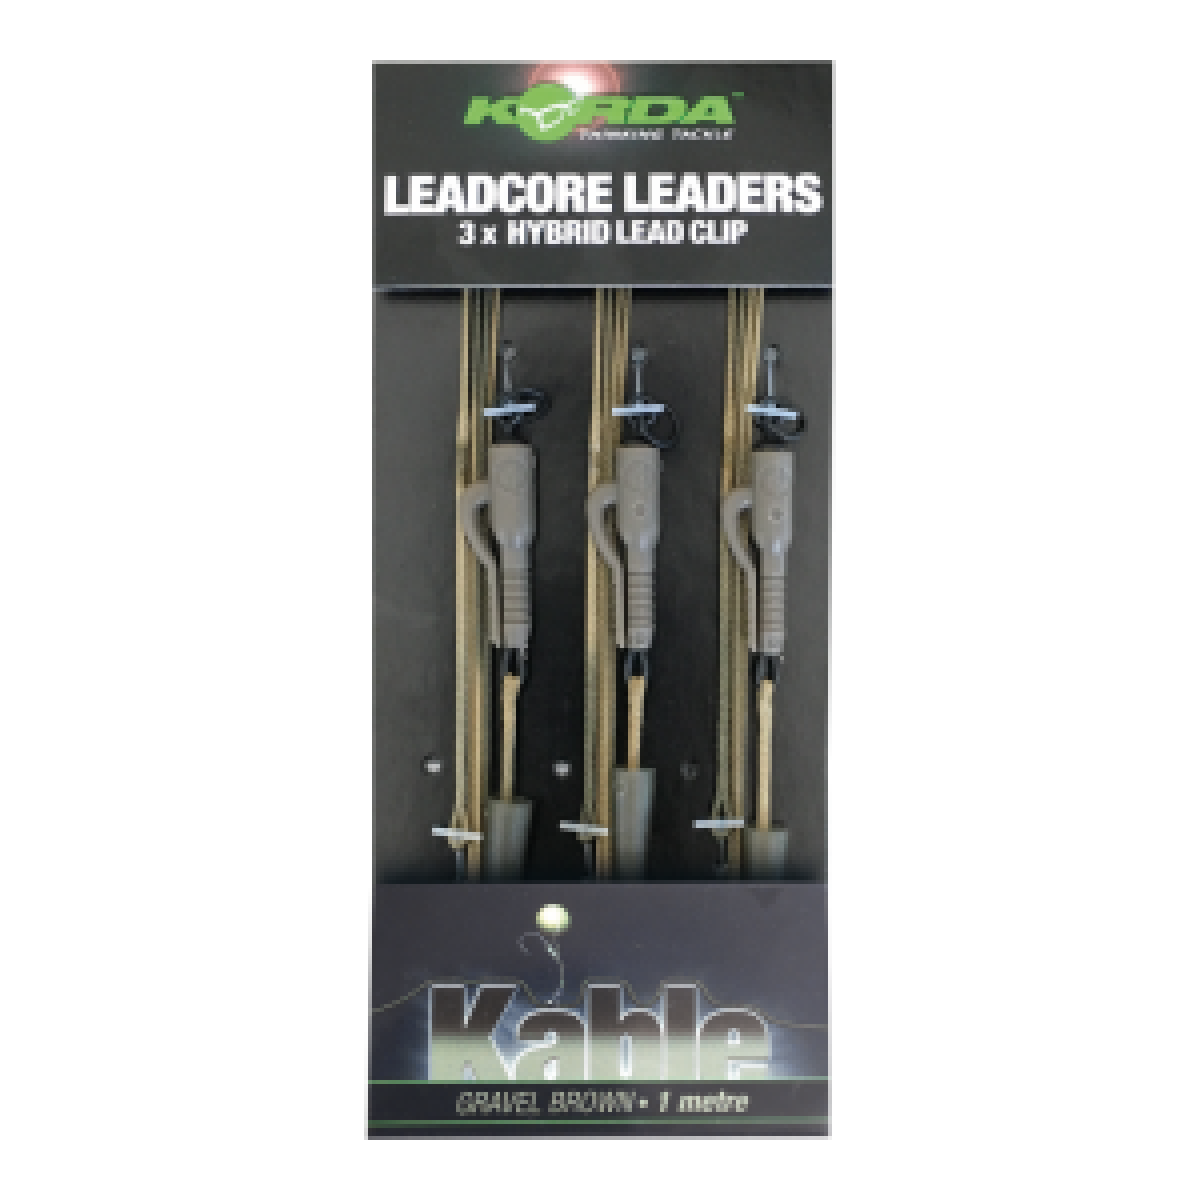 Korda Leadcore Leaders Hybrid Lead Clip Weed/Silt kolor